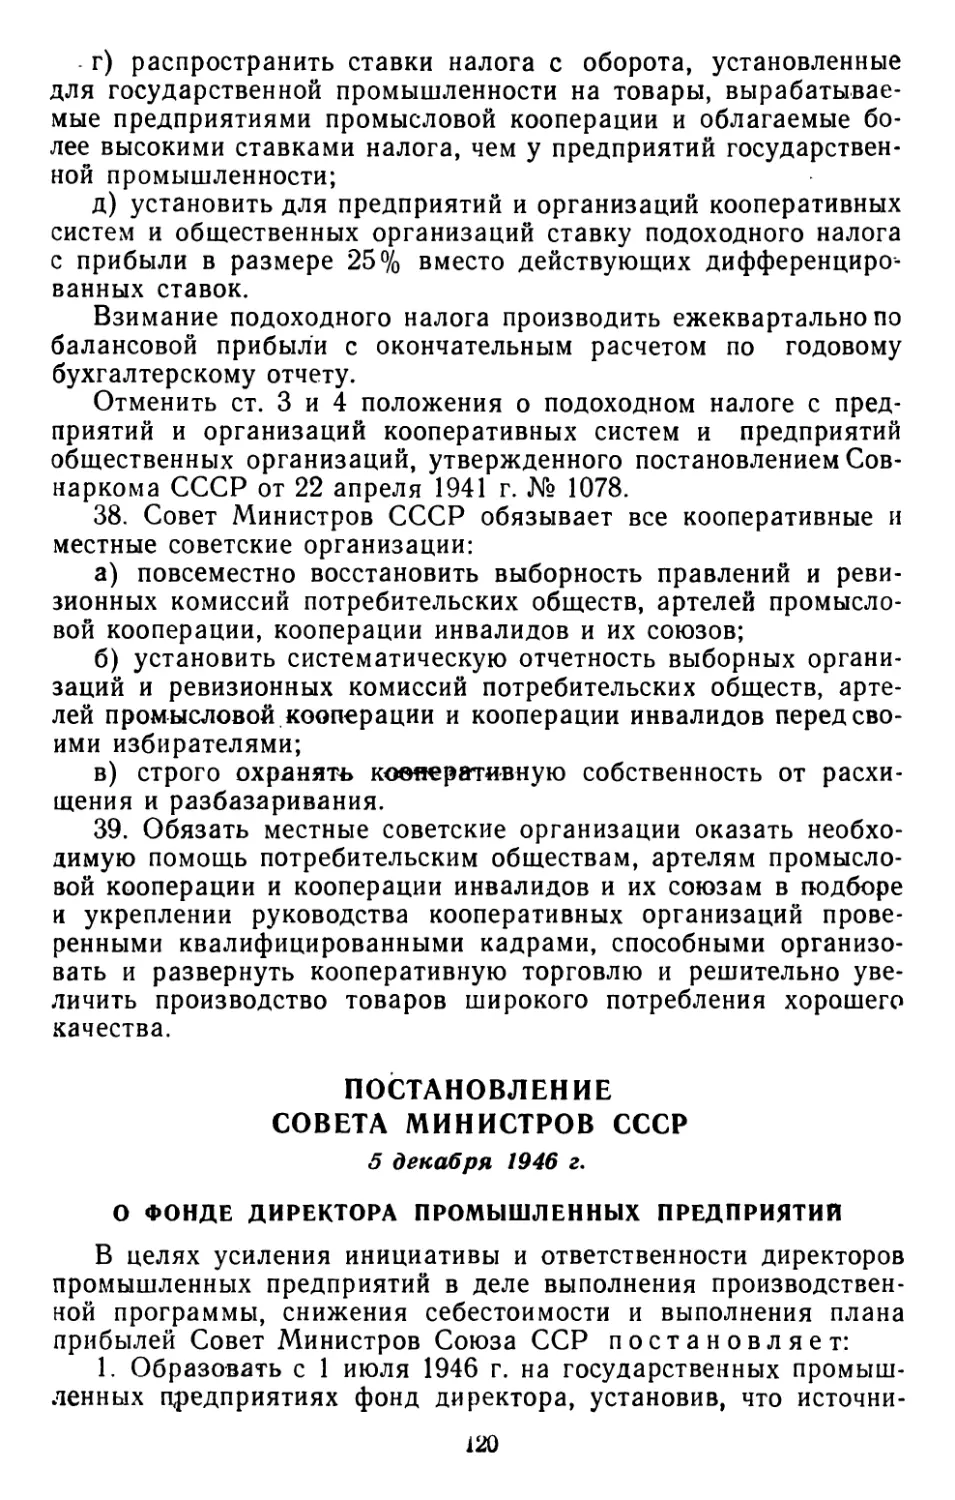 Постановление Совета Министров СССР, 5 декабря 1946 г. О фонде директора промышленных предприятий